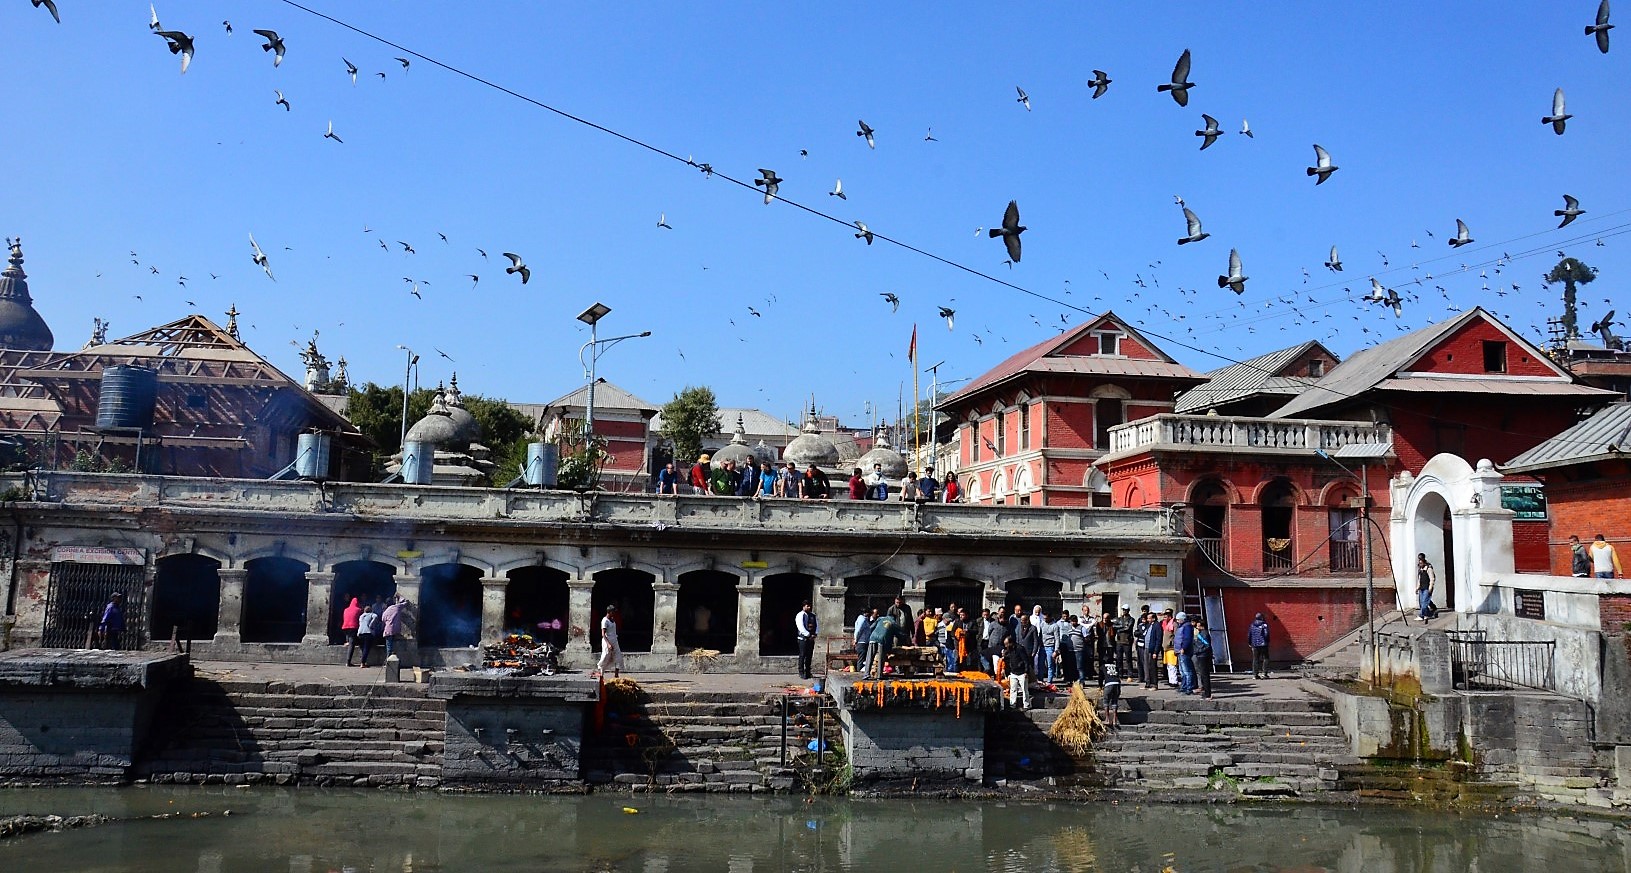 Crematie in de Pashupatinath Tempel, Kathmandu, highlight rondreis door Nepal 